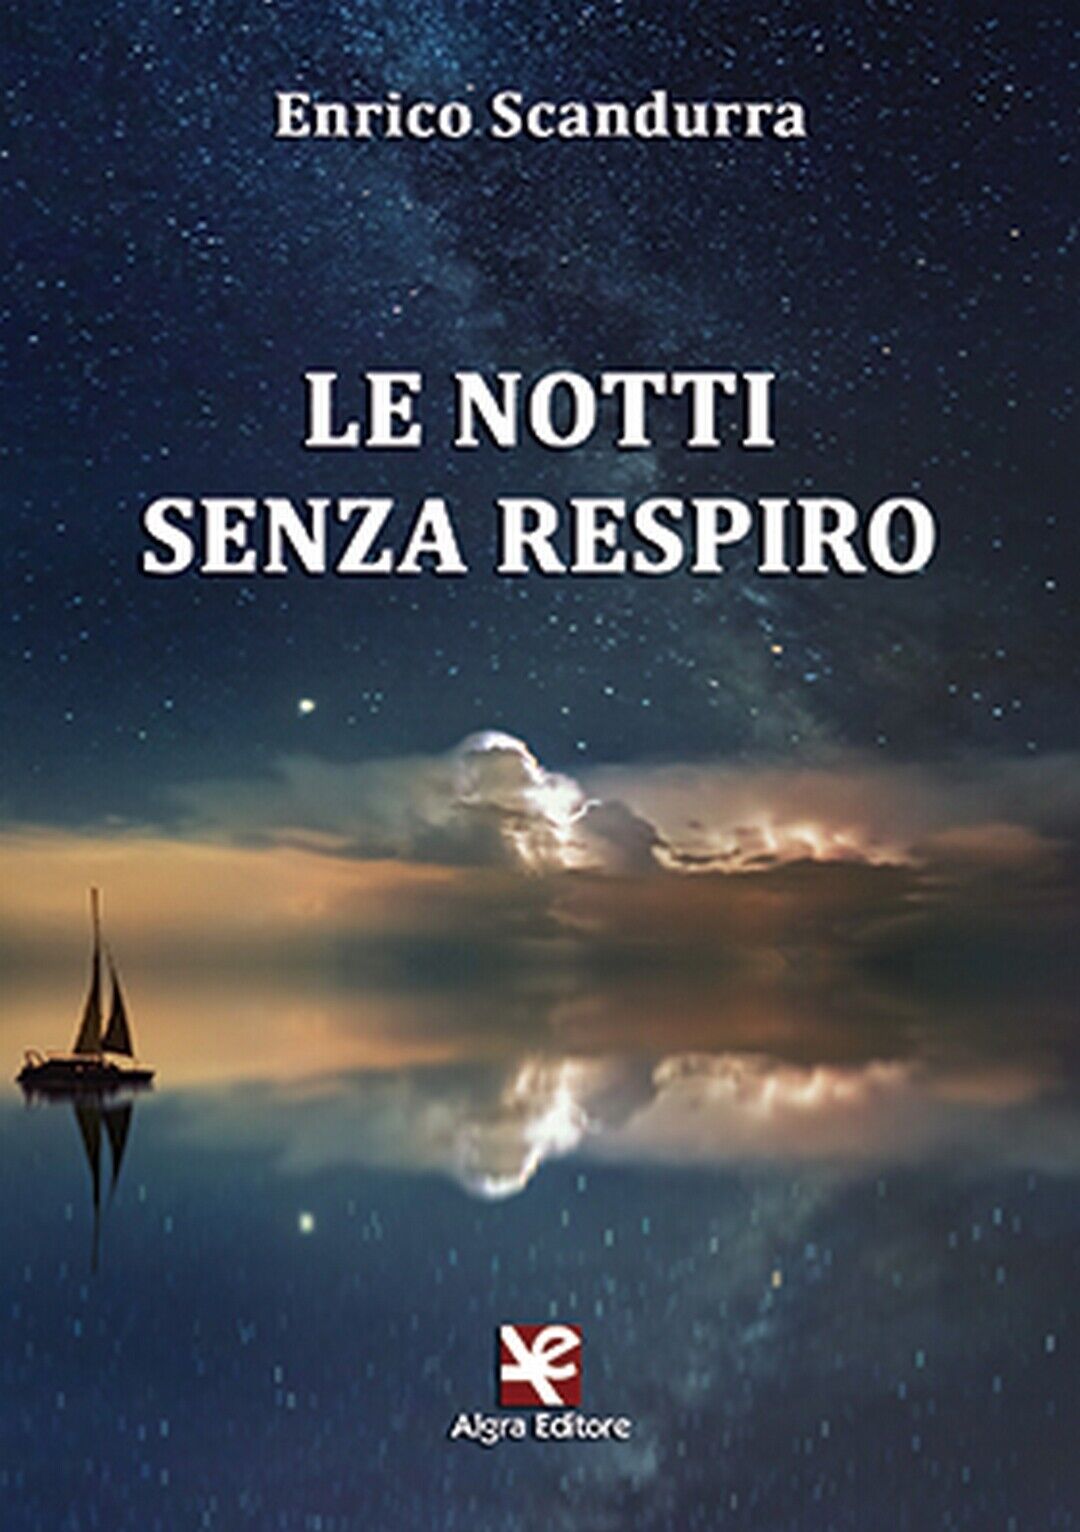 Le notti senza respiro  di Enrico Scandurra,  Algra Editore